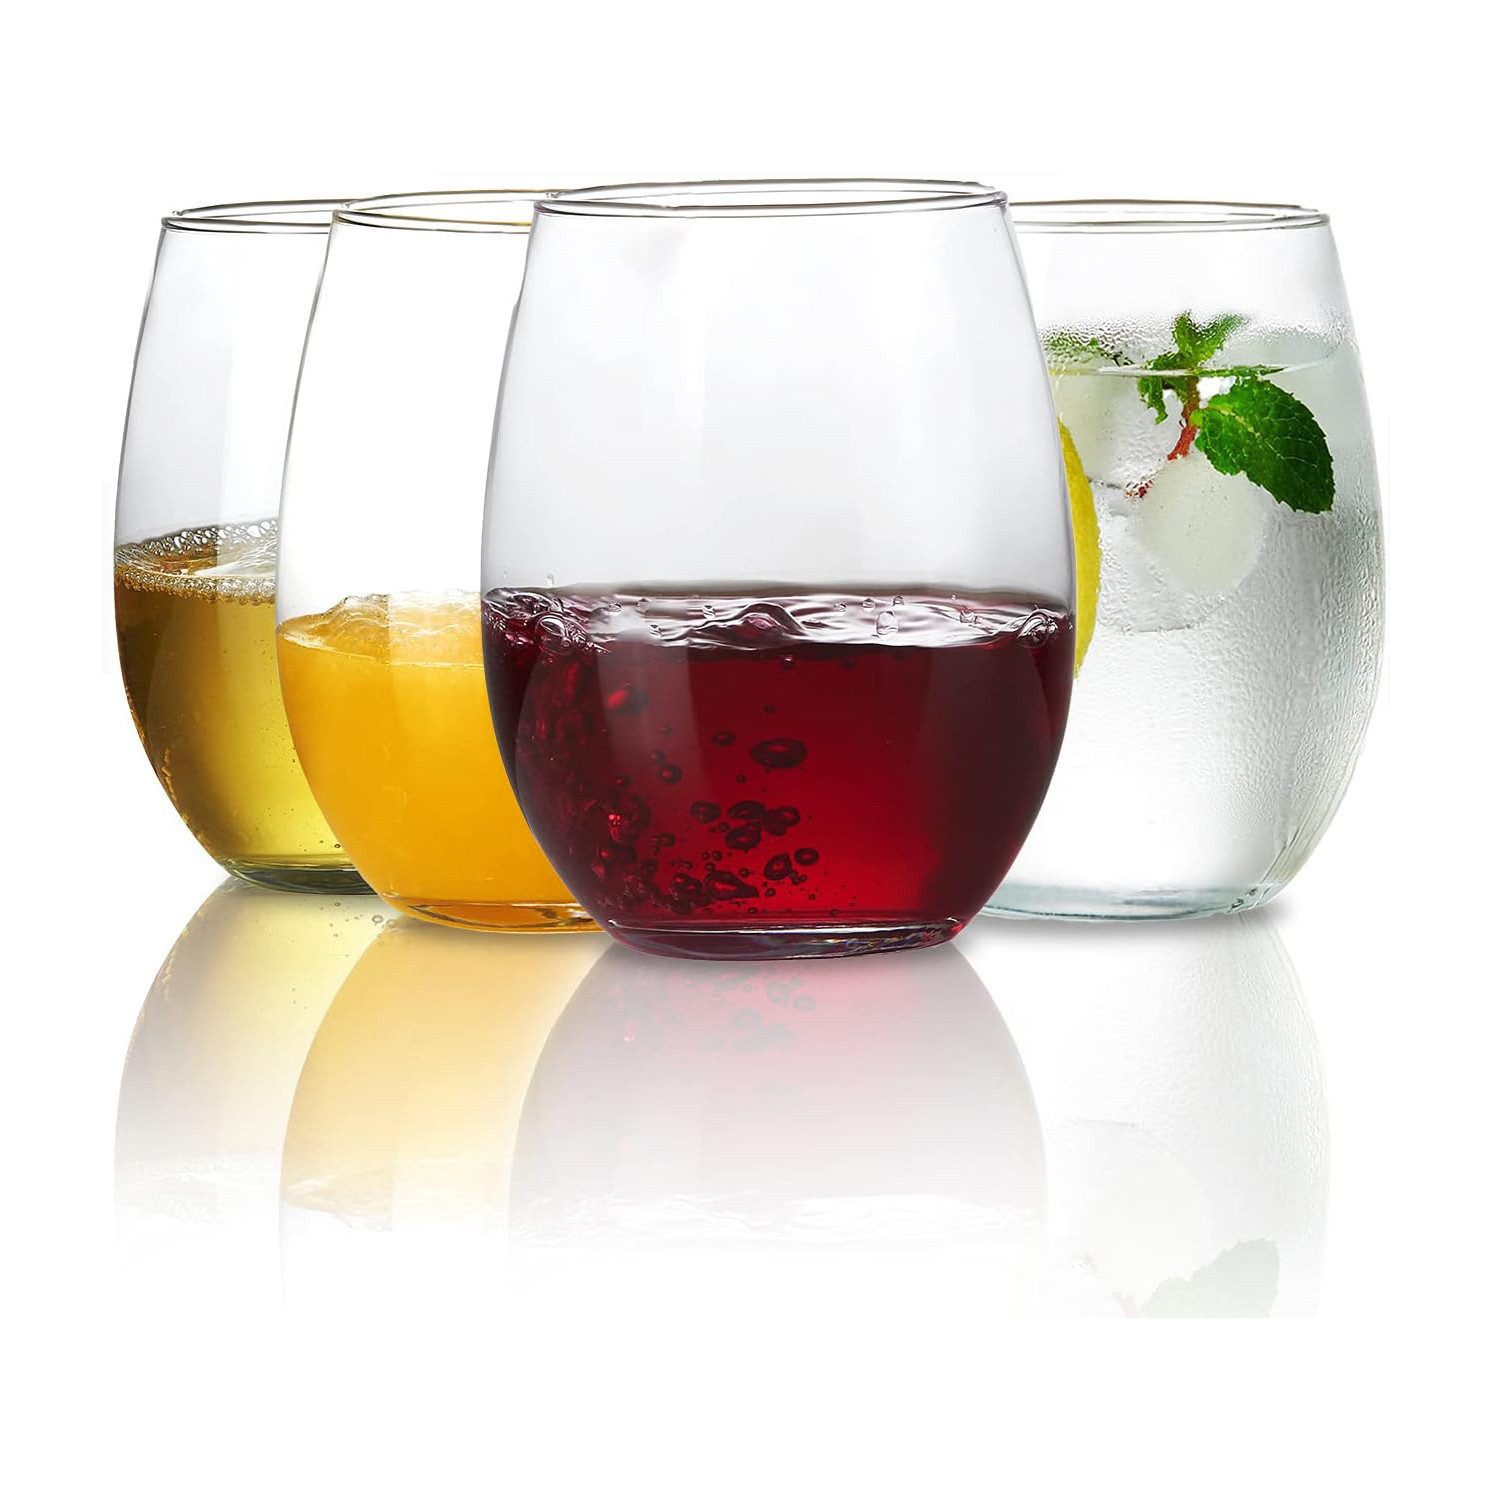 Gigicial Weinglas 4 STK Weingläser, spülmaschinenfest, Perfekt für Hause, Plastik, 4-teiliges Trinkflaschen-Set580 ml